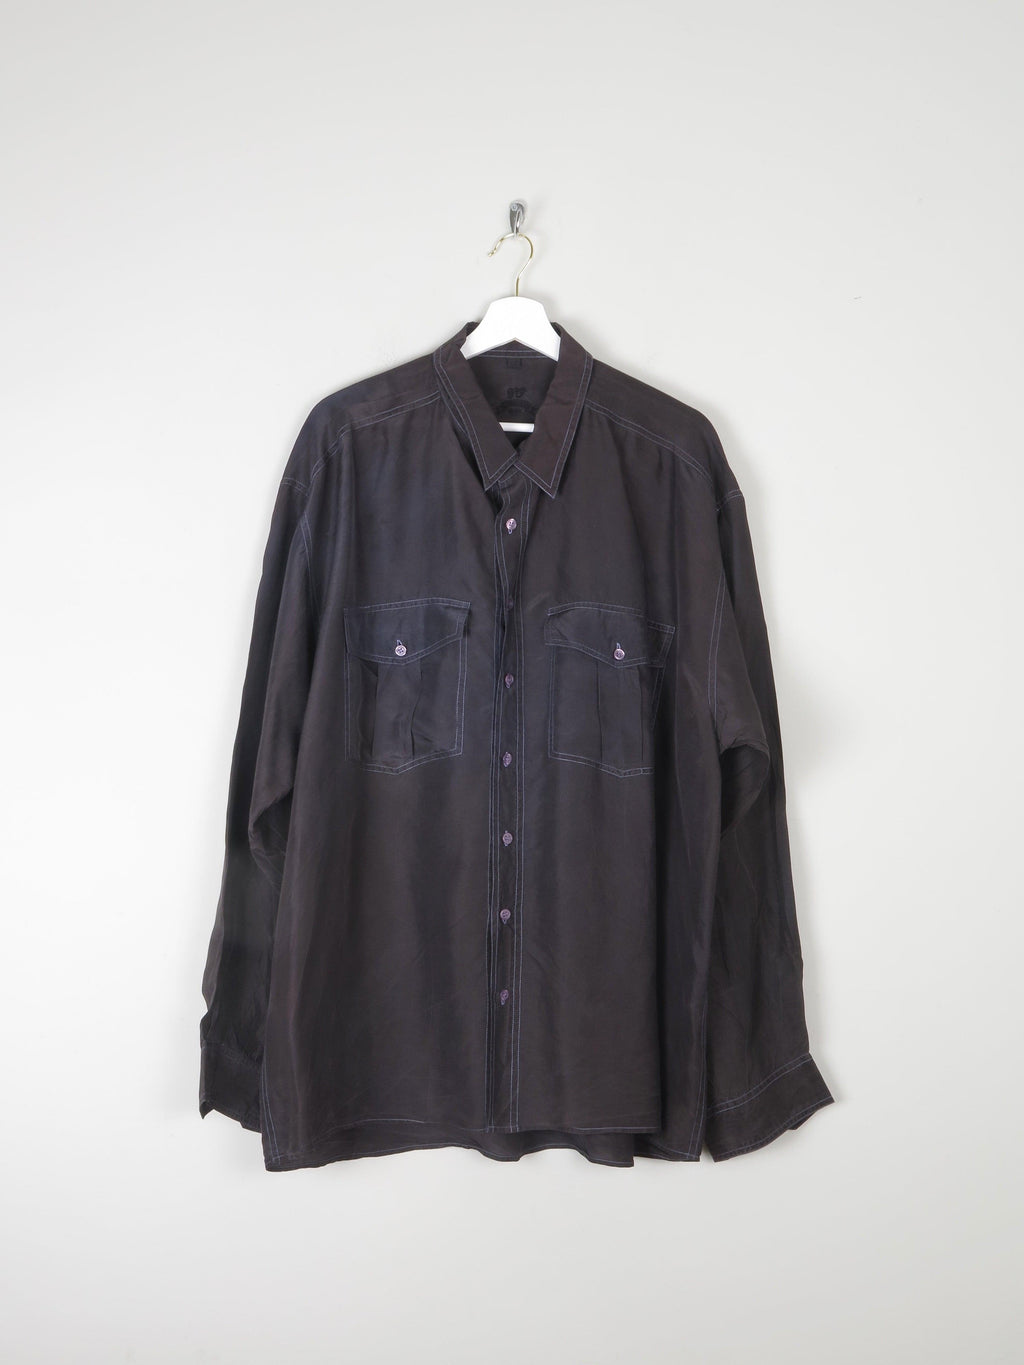 Men's Blue/Black Vintage Silk Long Sleeved Shirt XL - The Harlequin